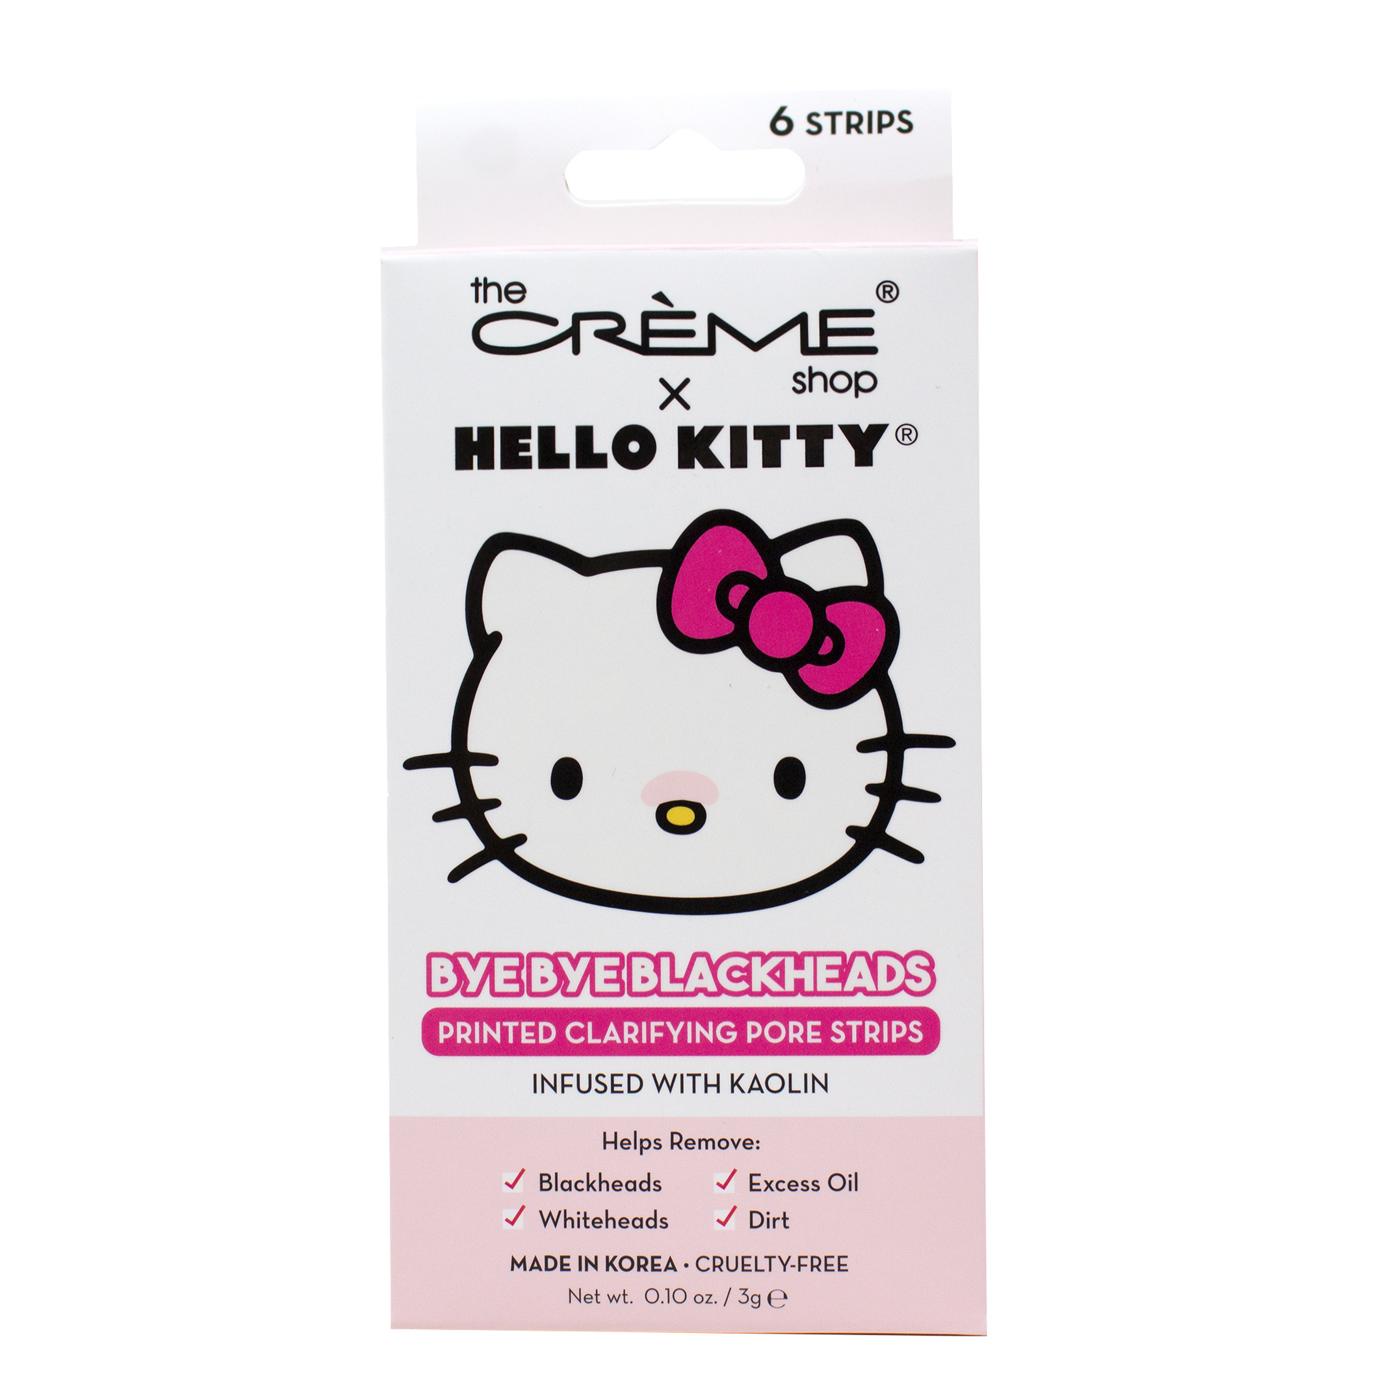 The Crème Shop X Hello Kitty Bye Bye Blackheads Pore Strips; image 1 of 2